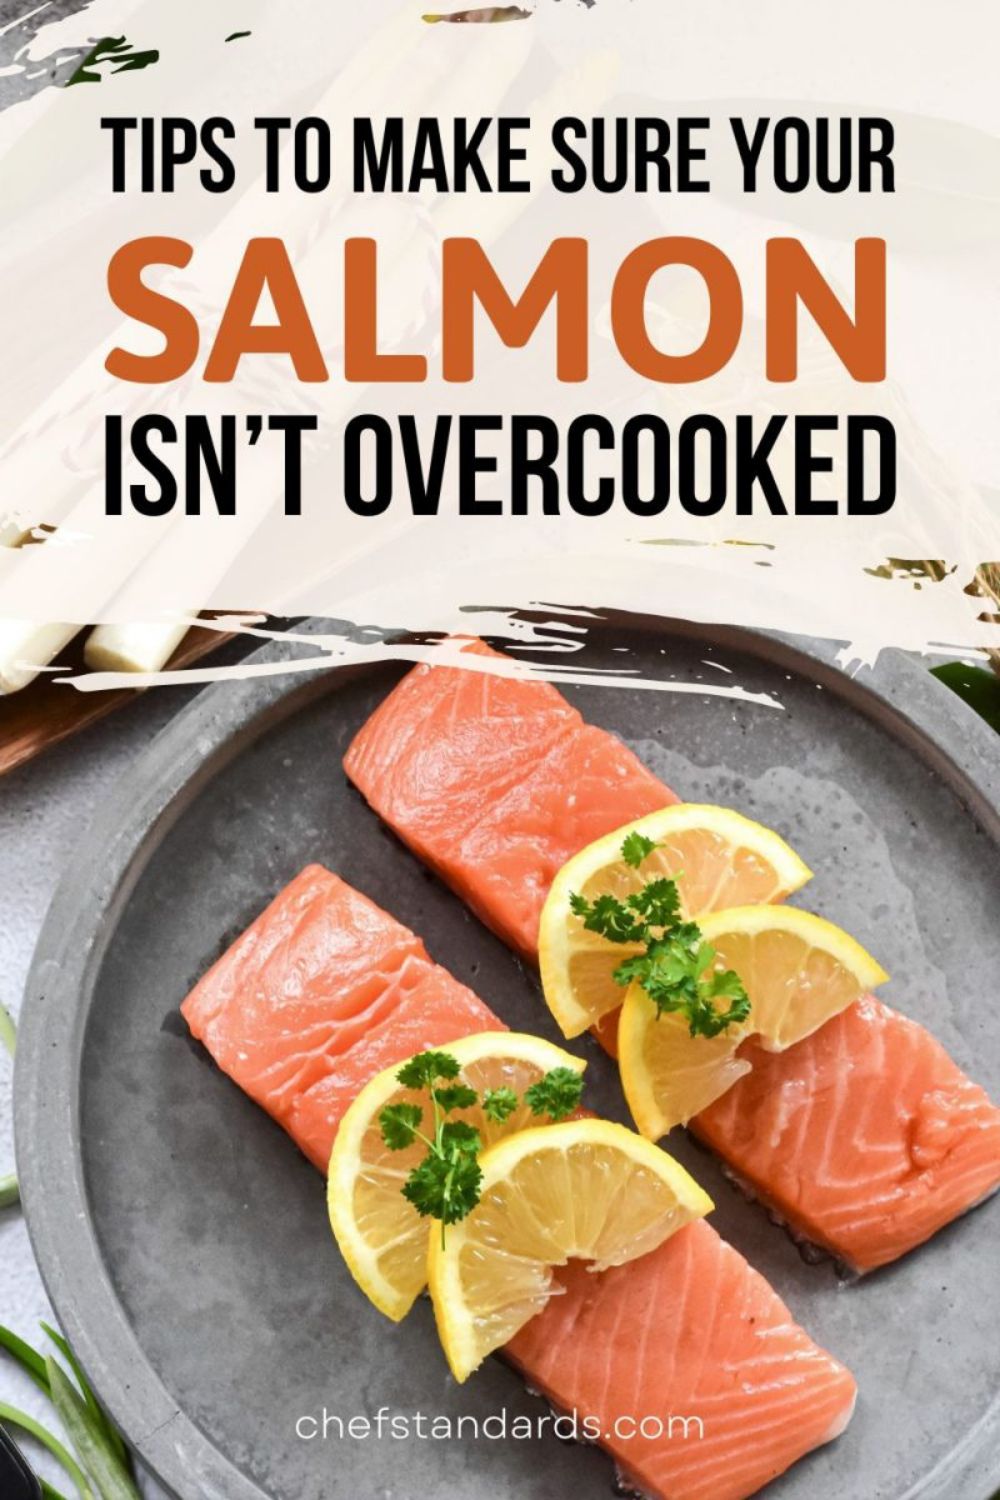 5 señales inequívocas de que el salmón está poco hecho